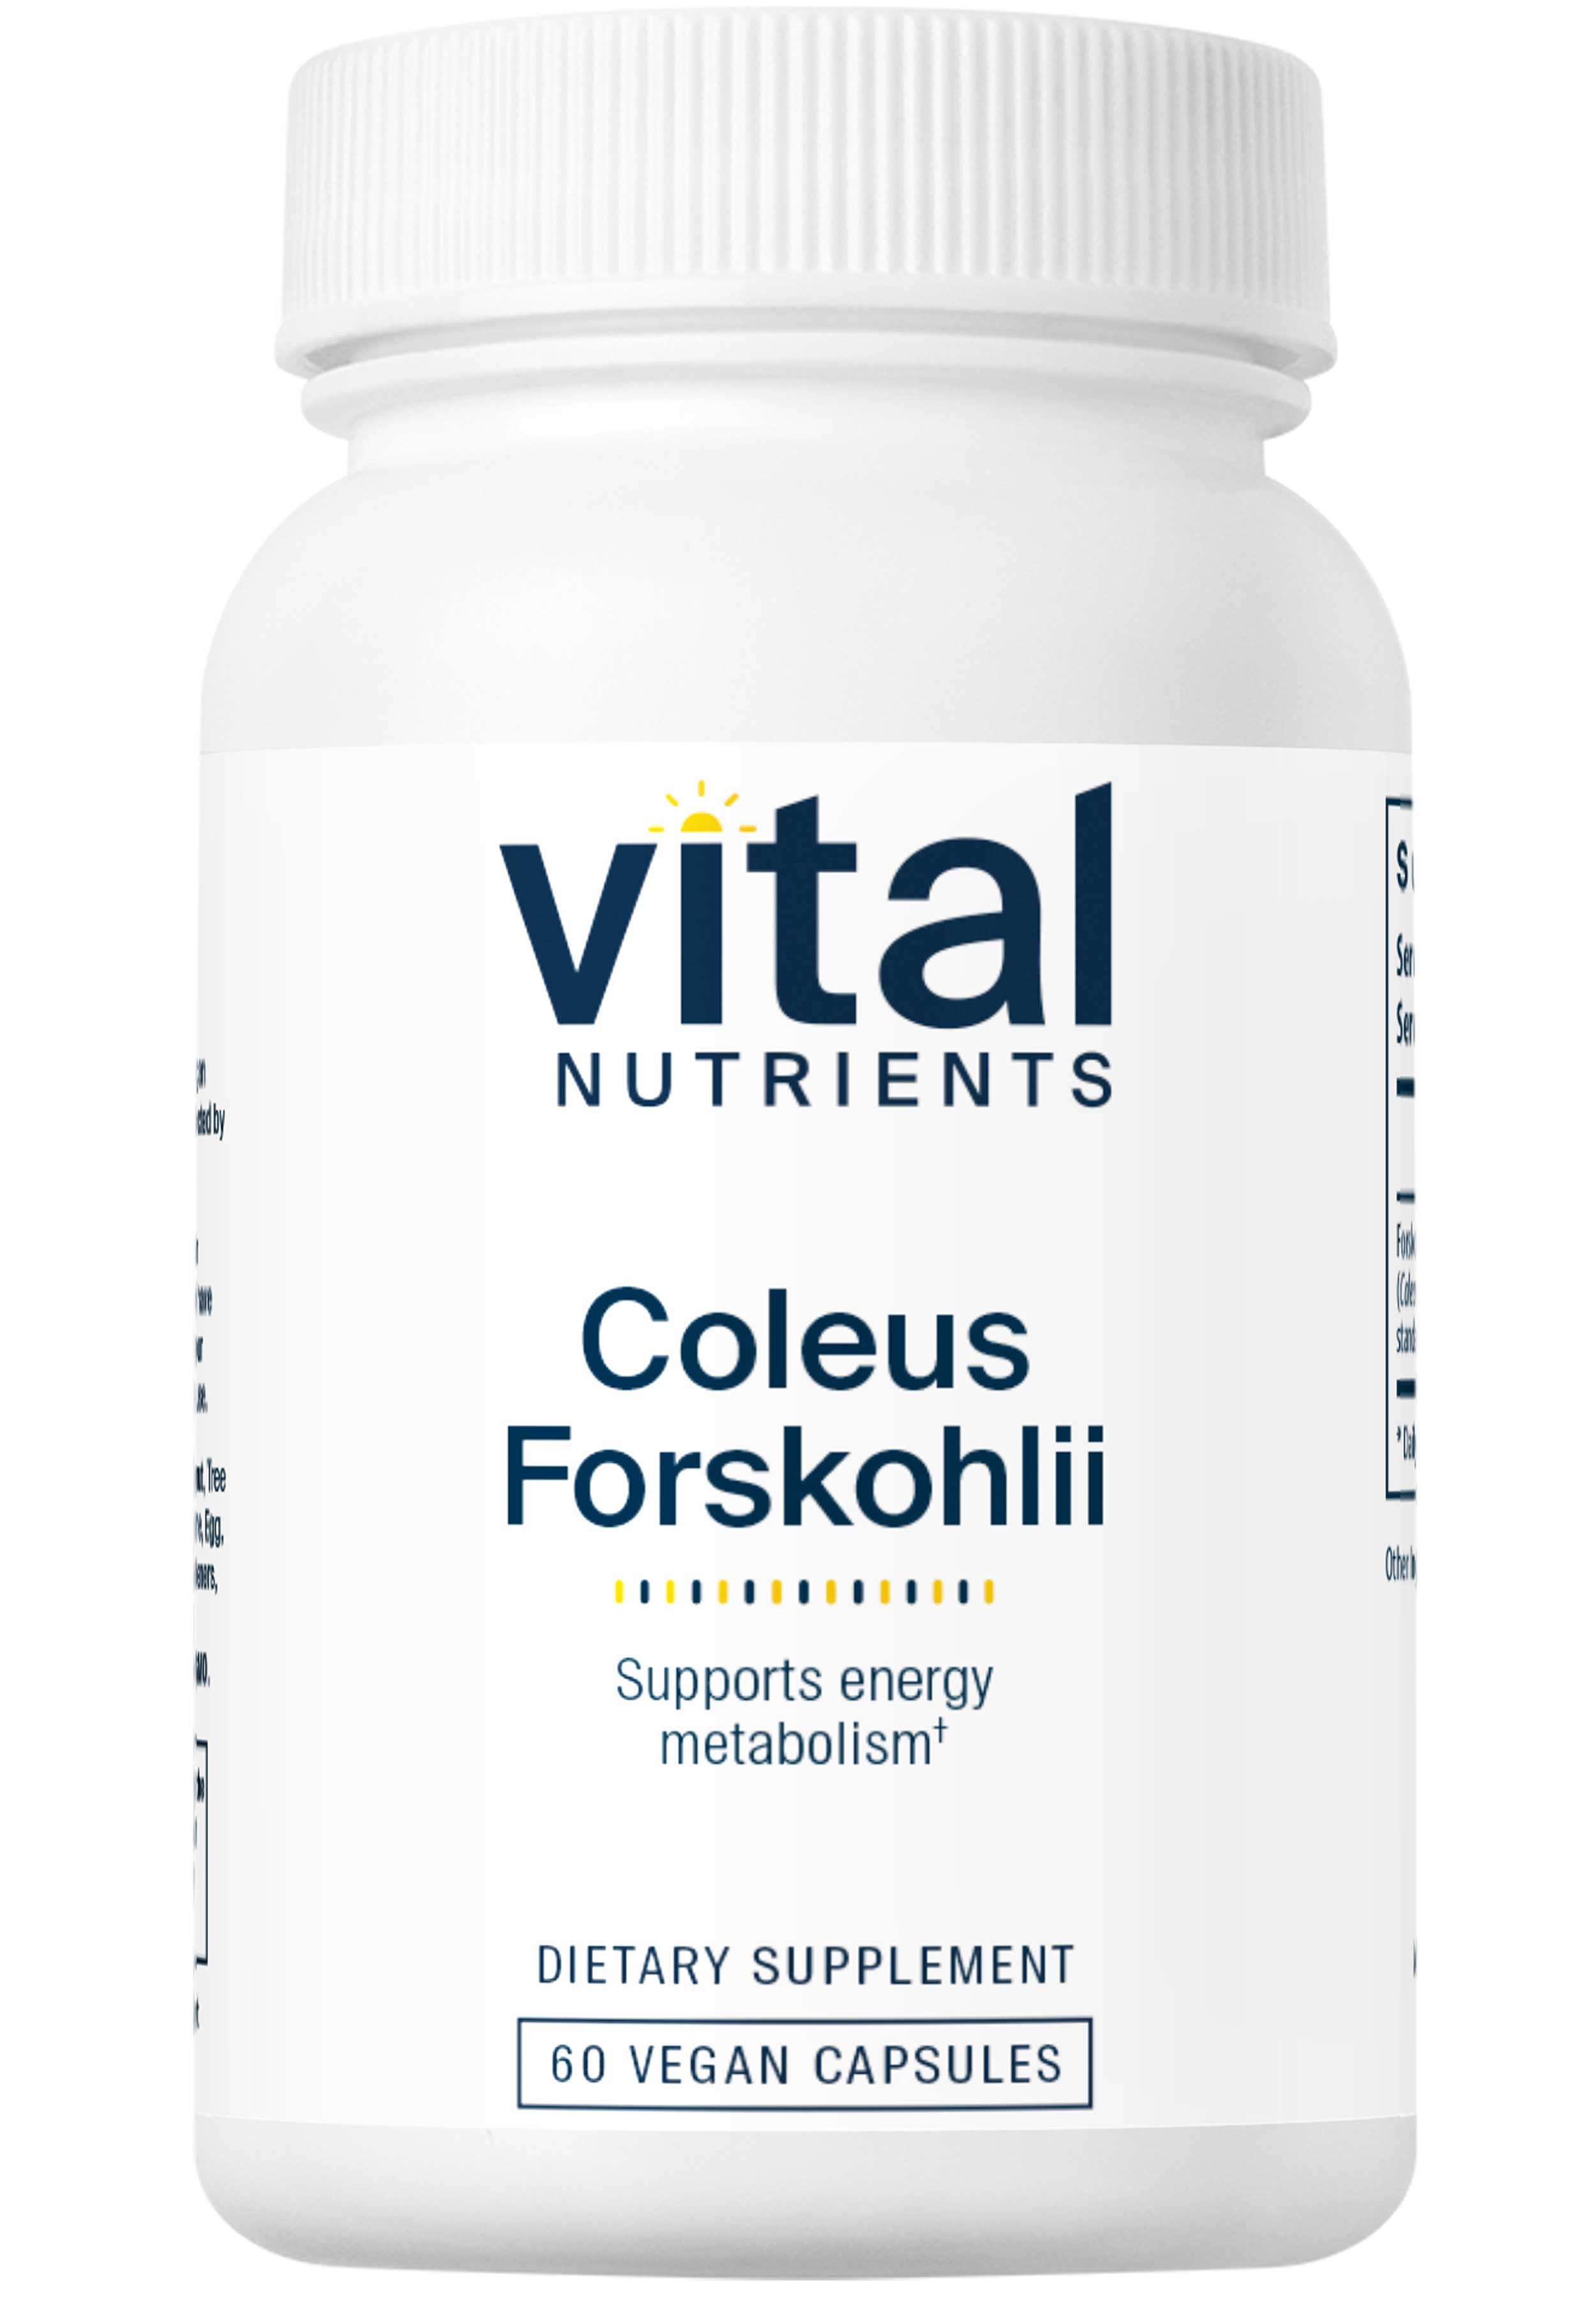 Vital Nutrients Coleus Forskohlii 10%